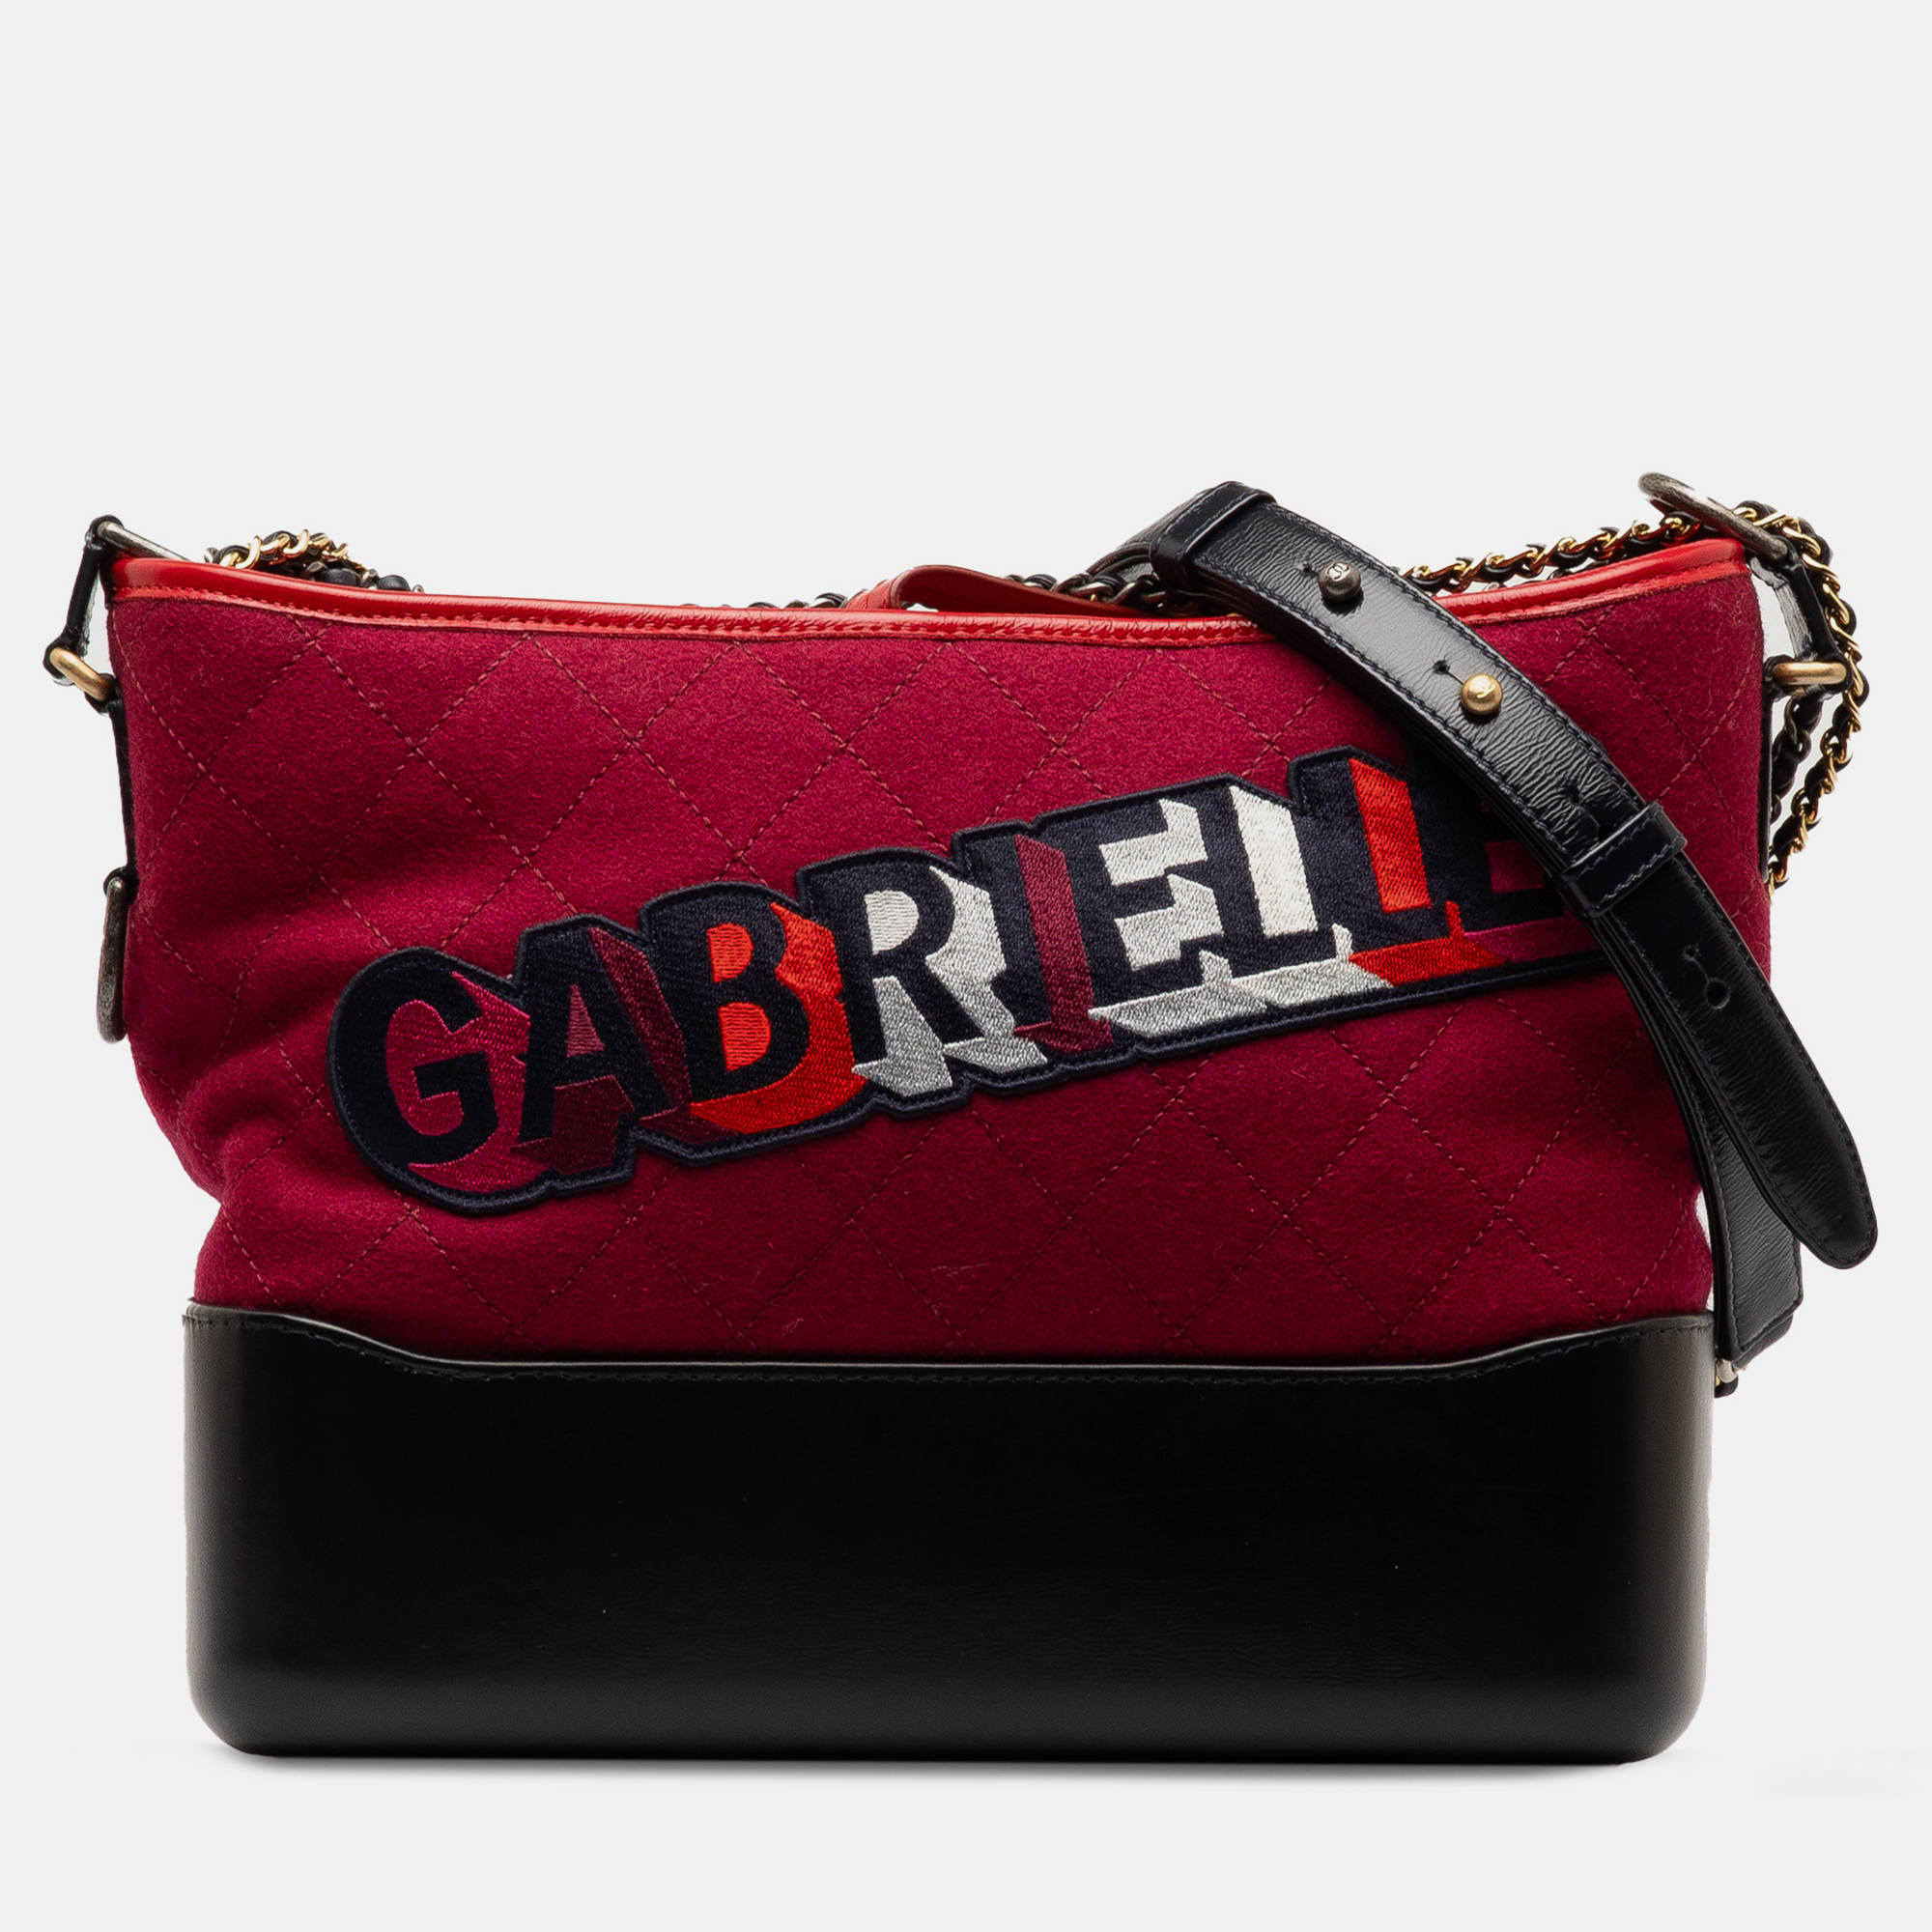 Chanel small wool gabrielle crossbody bag